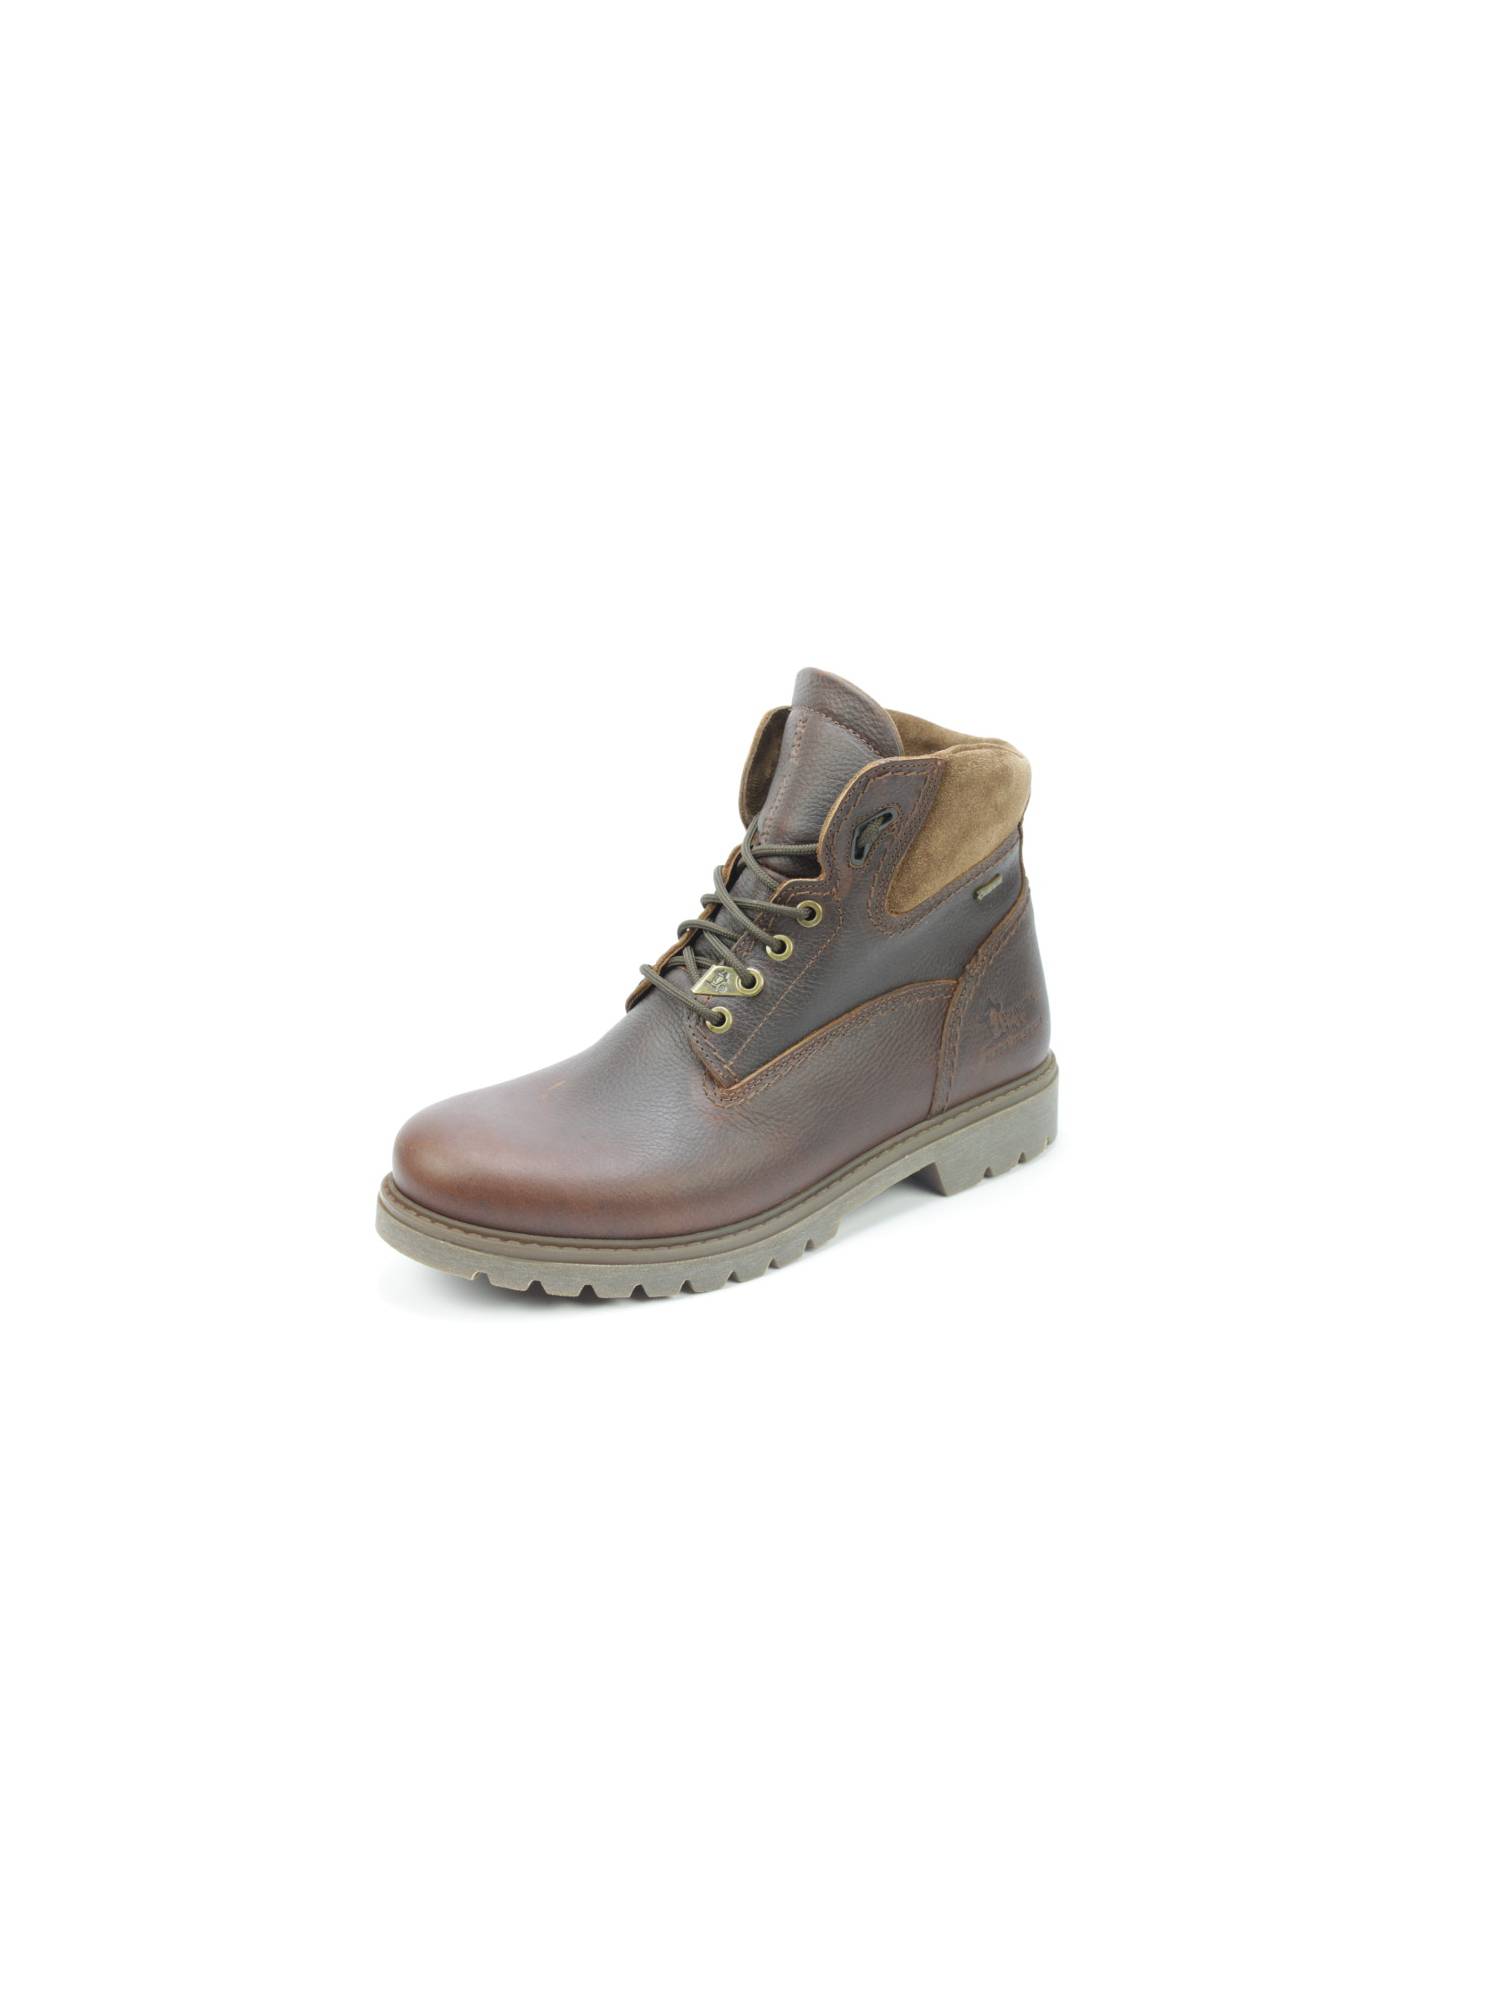 Panama Jack Amur GTX C10 Boots sportief Direct leverbaar uit de webshop van www.pontman.nl/